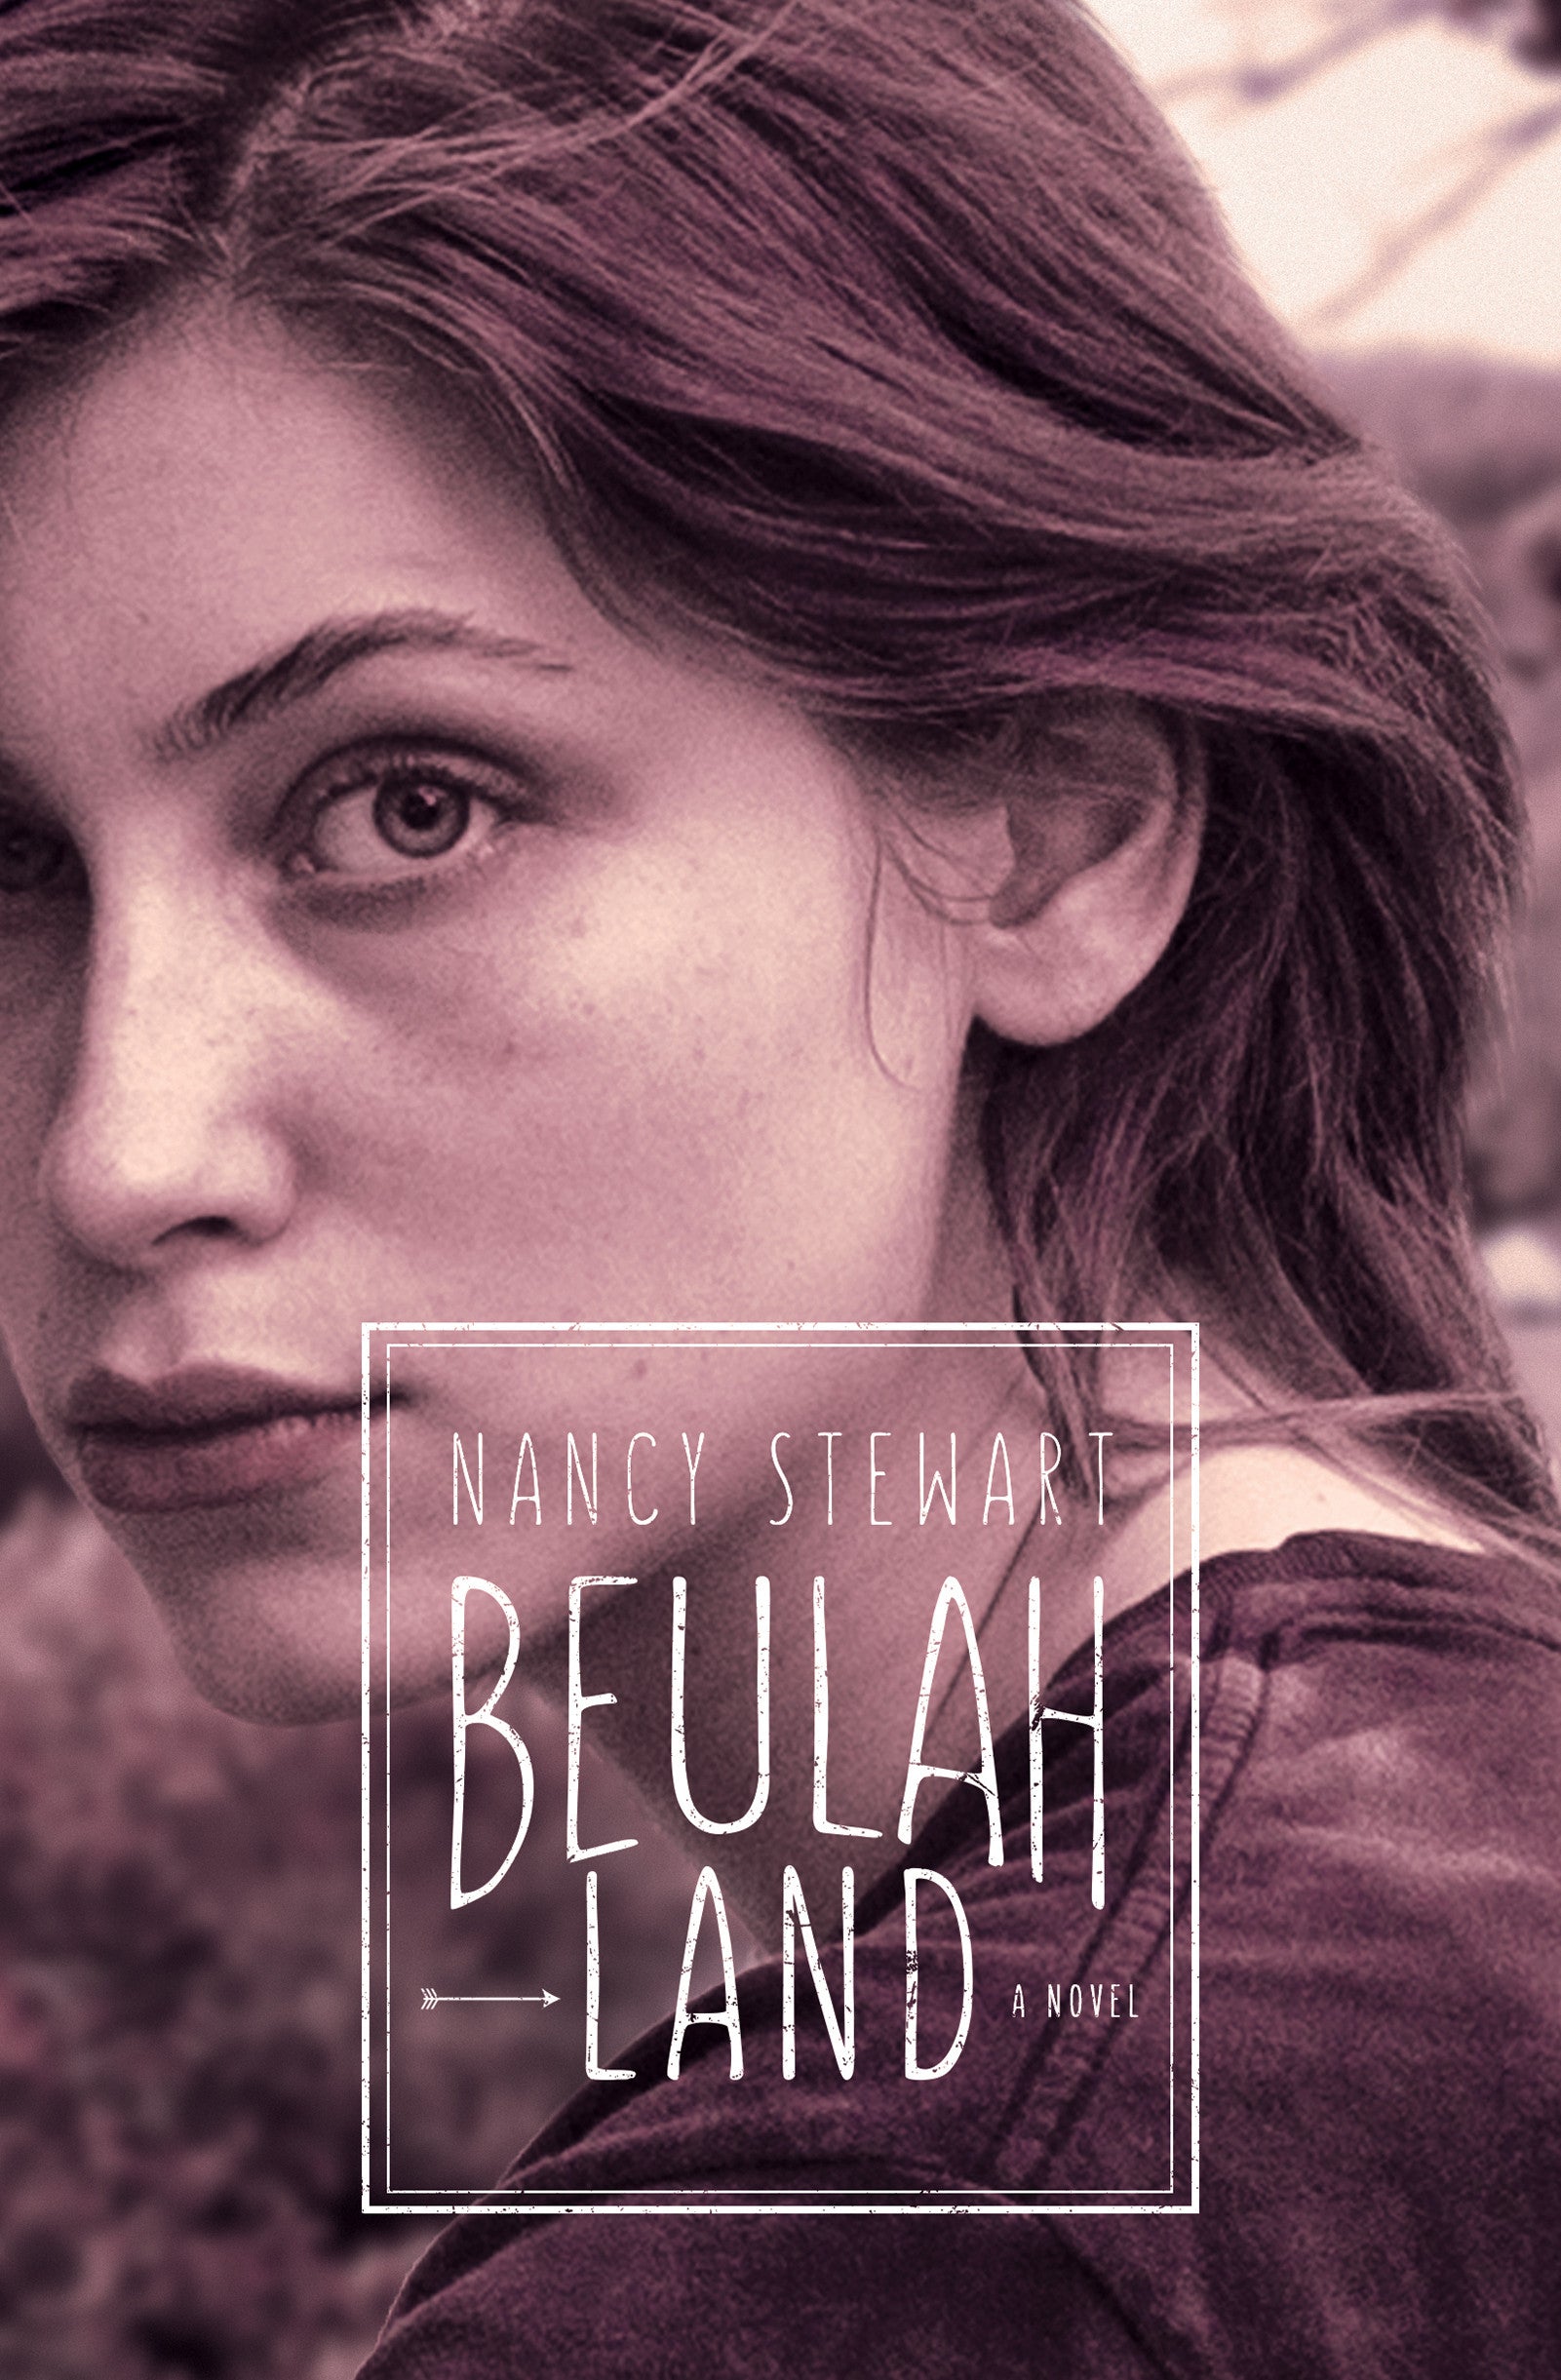 Beulah Land (eBook package)